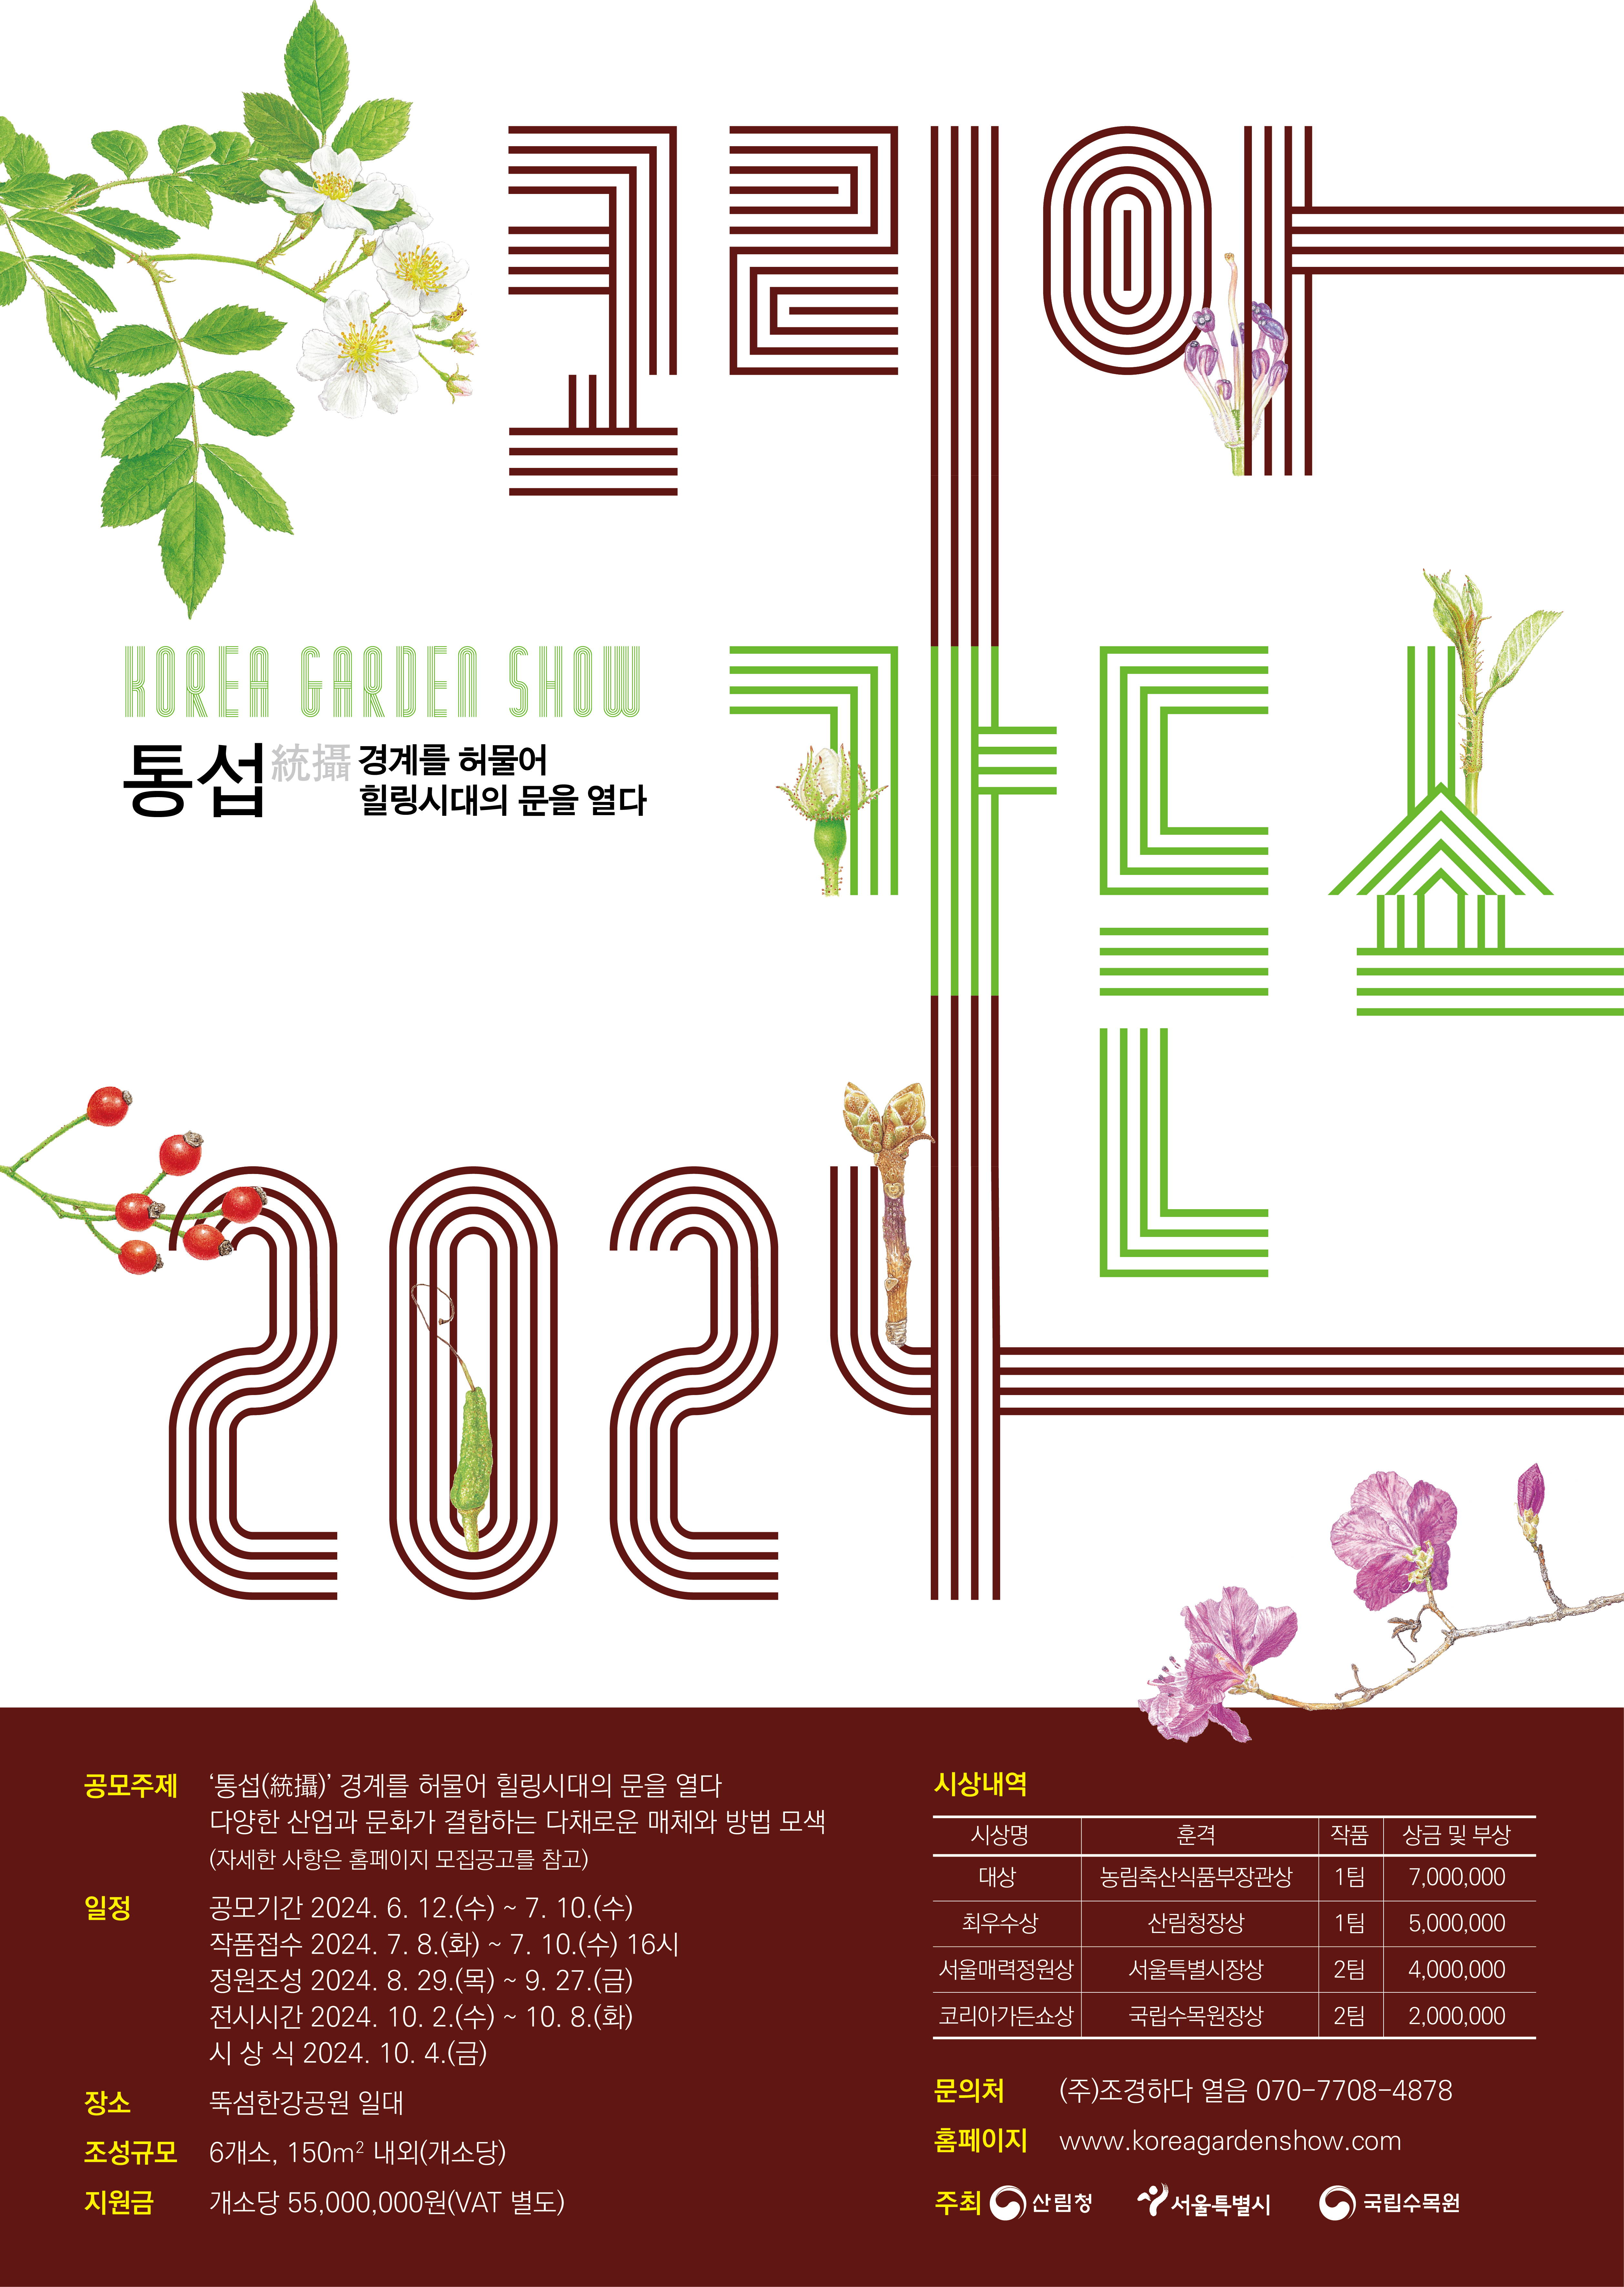 서울 뚝섬이 정원으로…코리아가든쇼에 도전하세요!